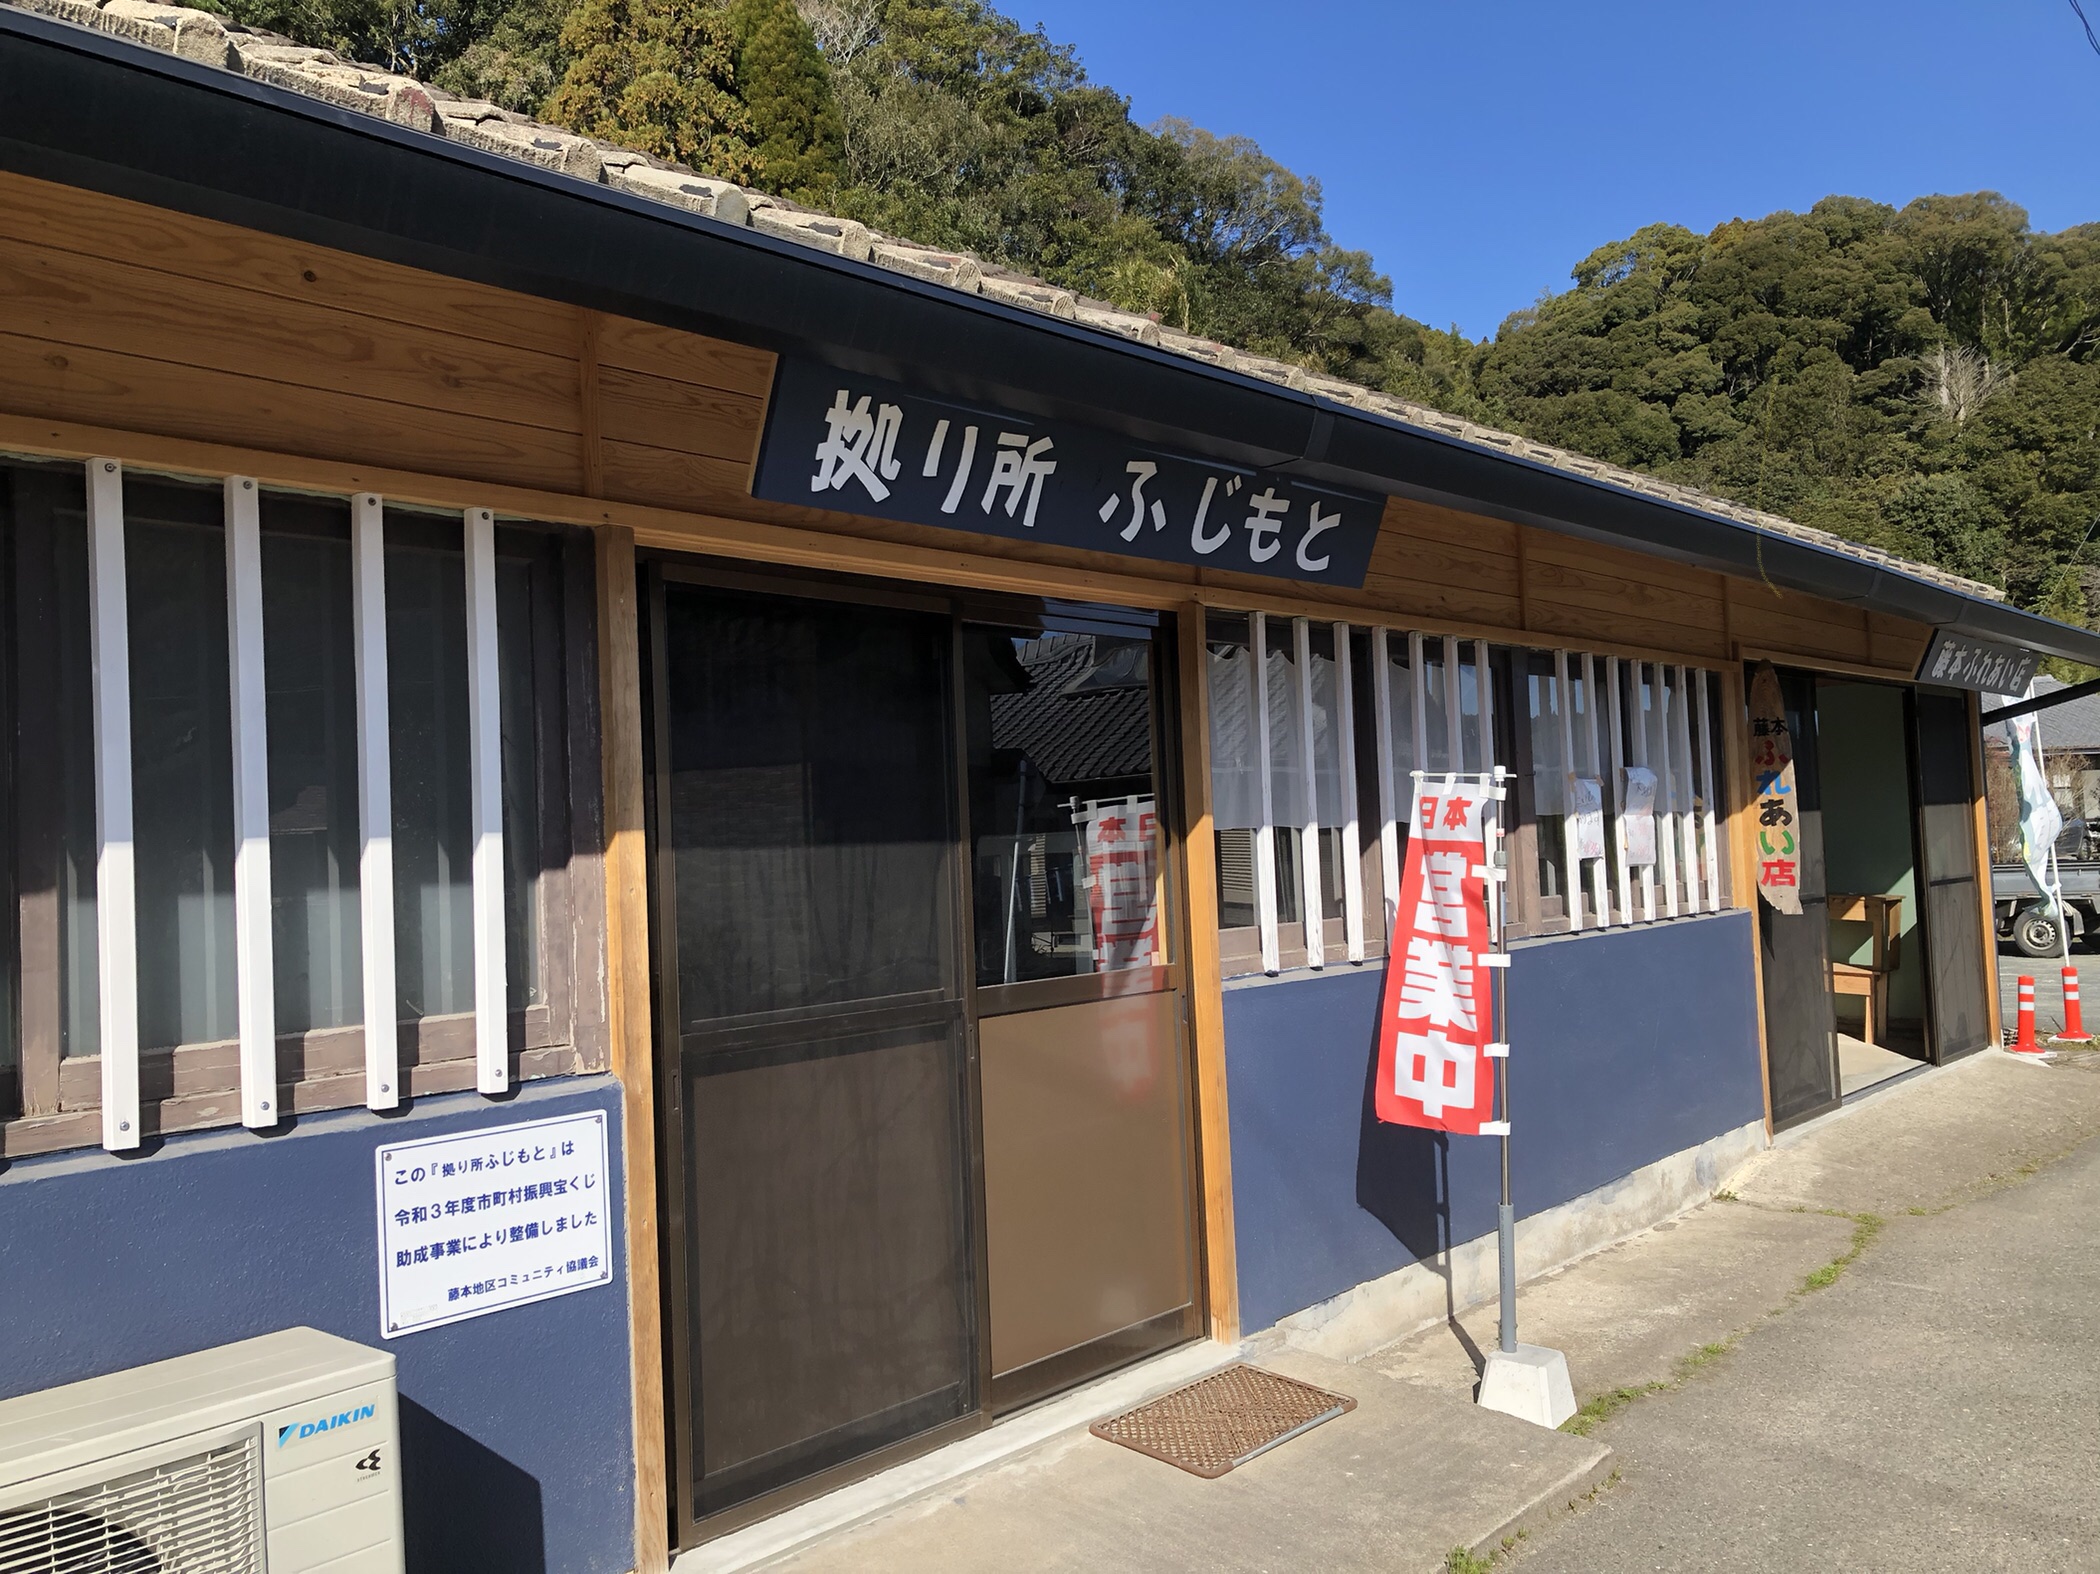 Fujimoto Waterfall Fujimoto Fureai Shop: Where You Can Purchase Local Specialties